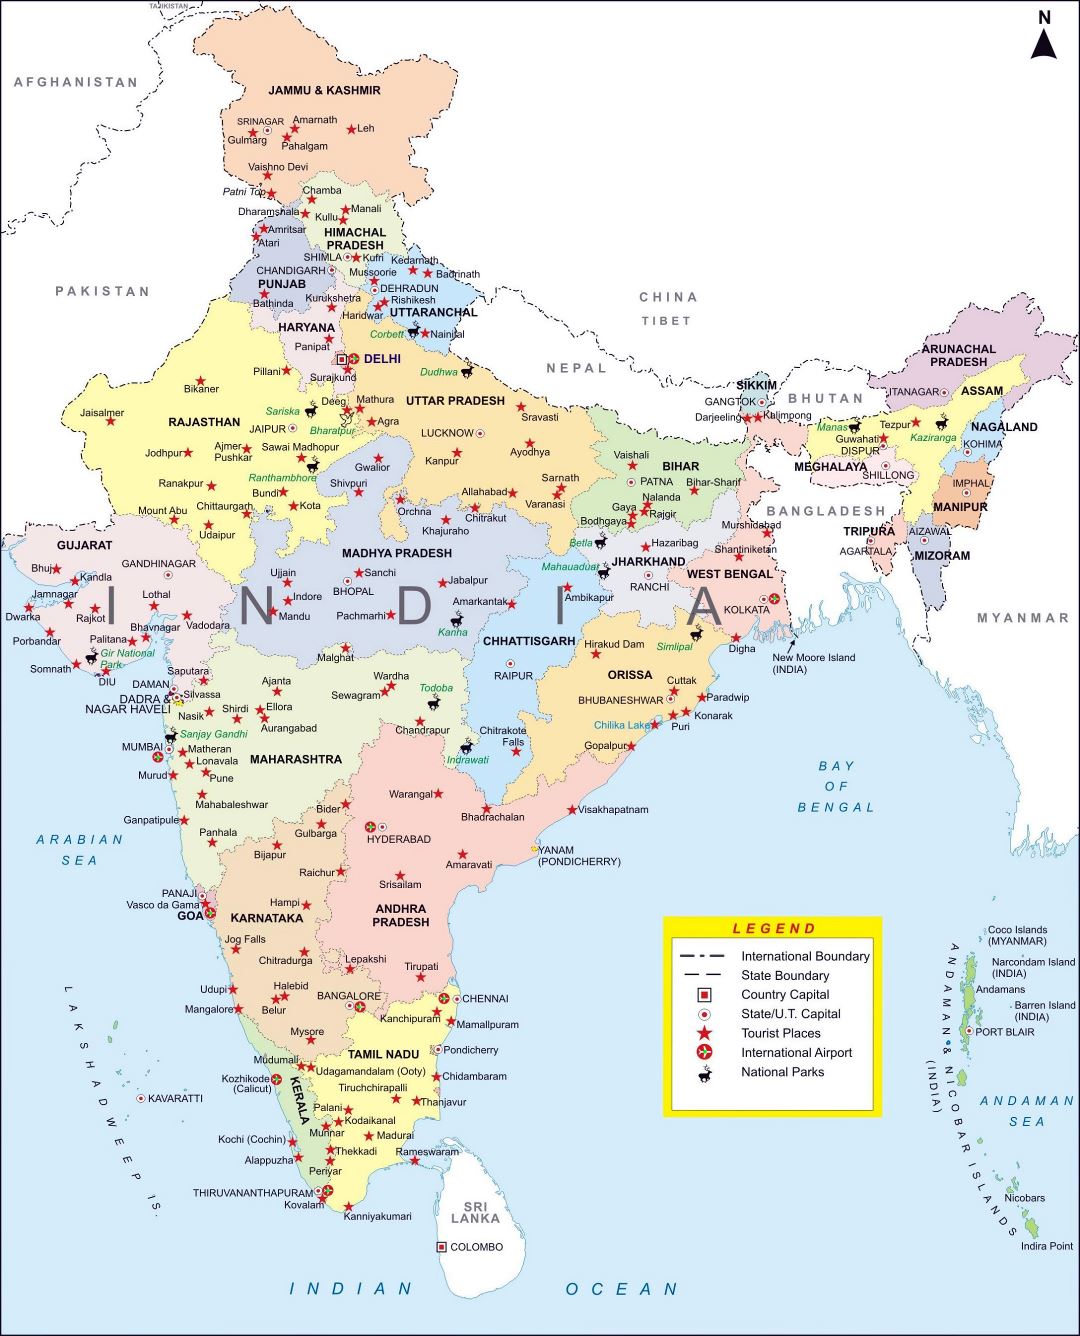 Grande detallado mapa administrativo de la India con principales ciudades